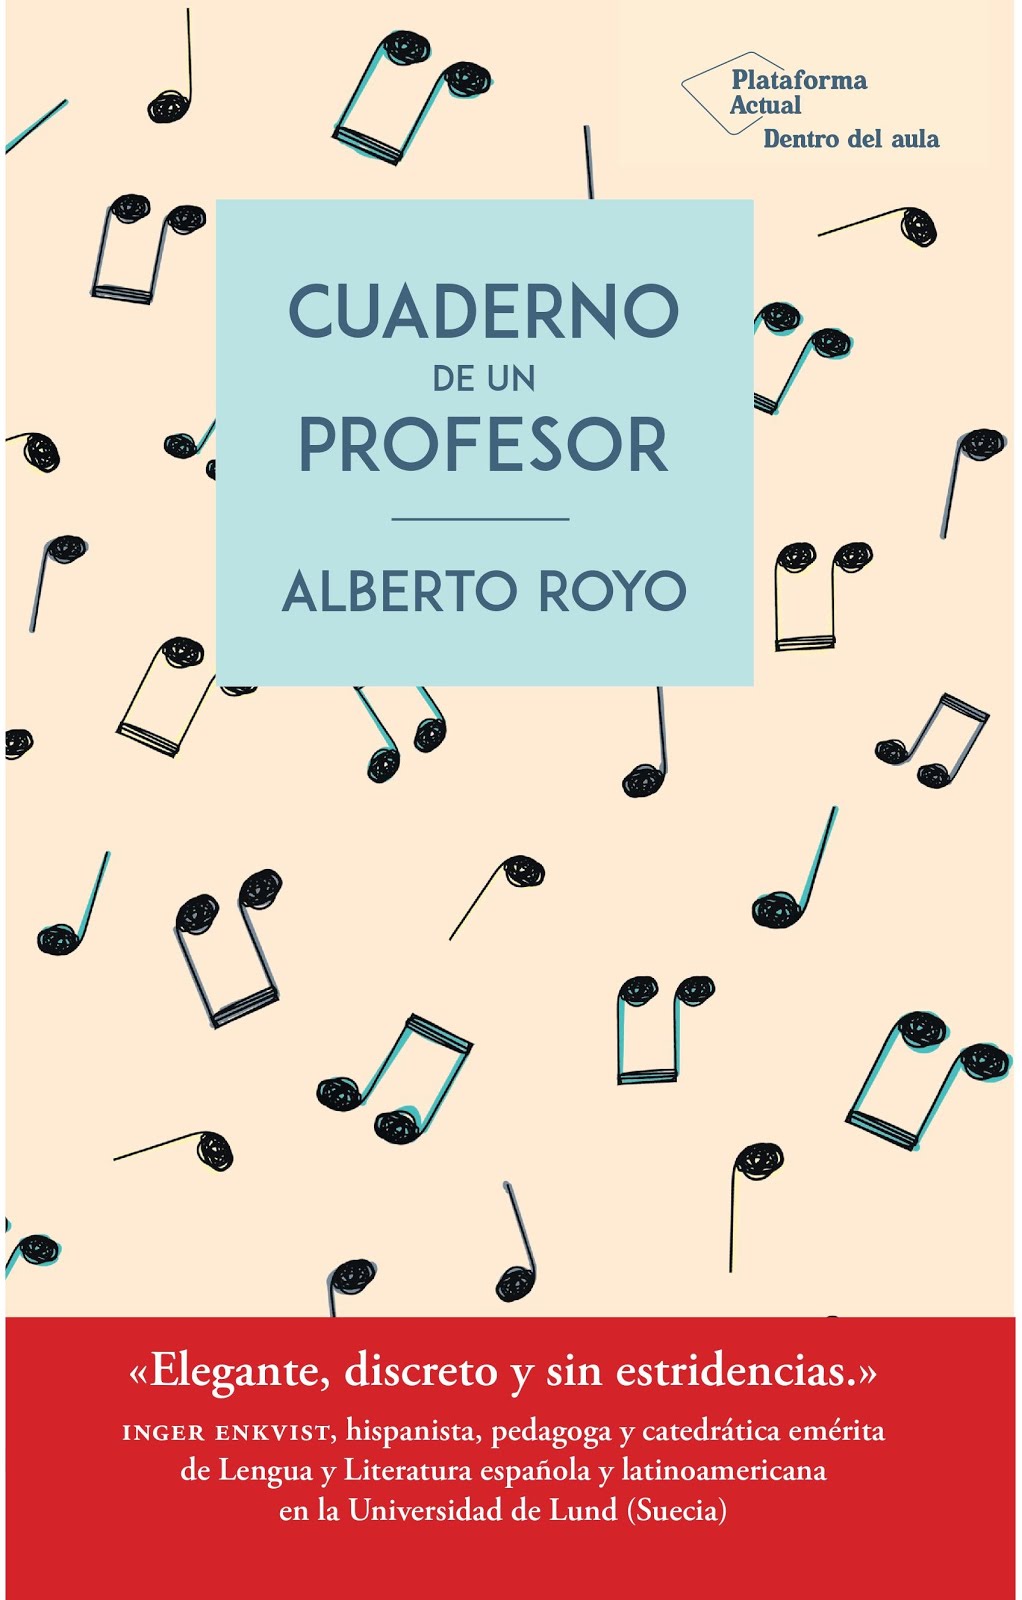 Cuaderno de un profesor (Plataforma. 2019)